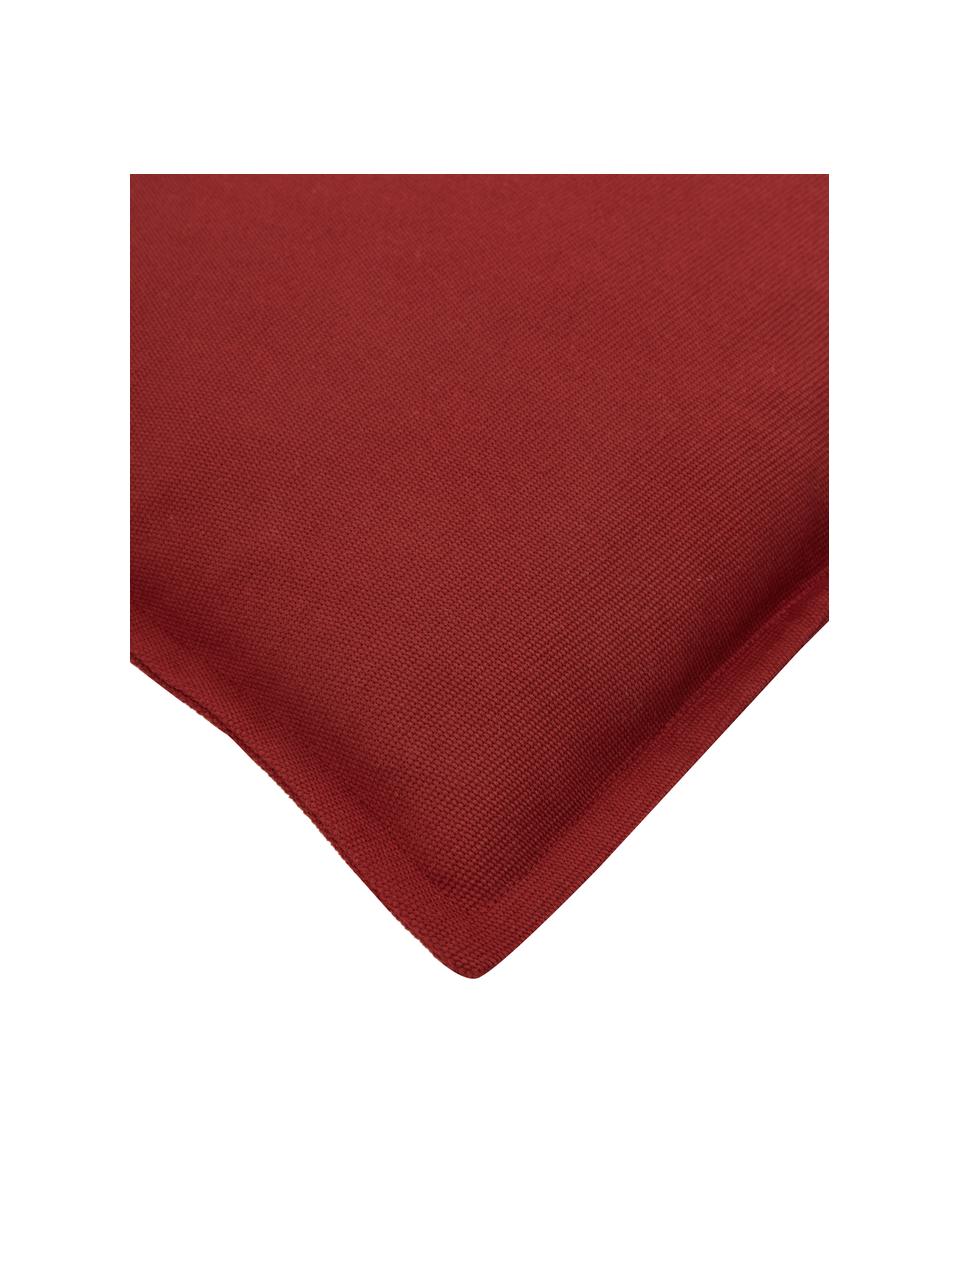 Federa arredo in cotone rosso scuro Mads, 100% cotone, Rosso, Larg. 30 x Lung. 50 cm